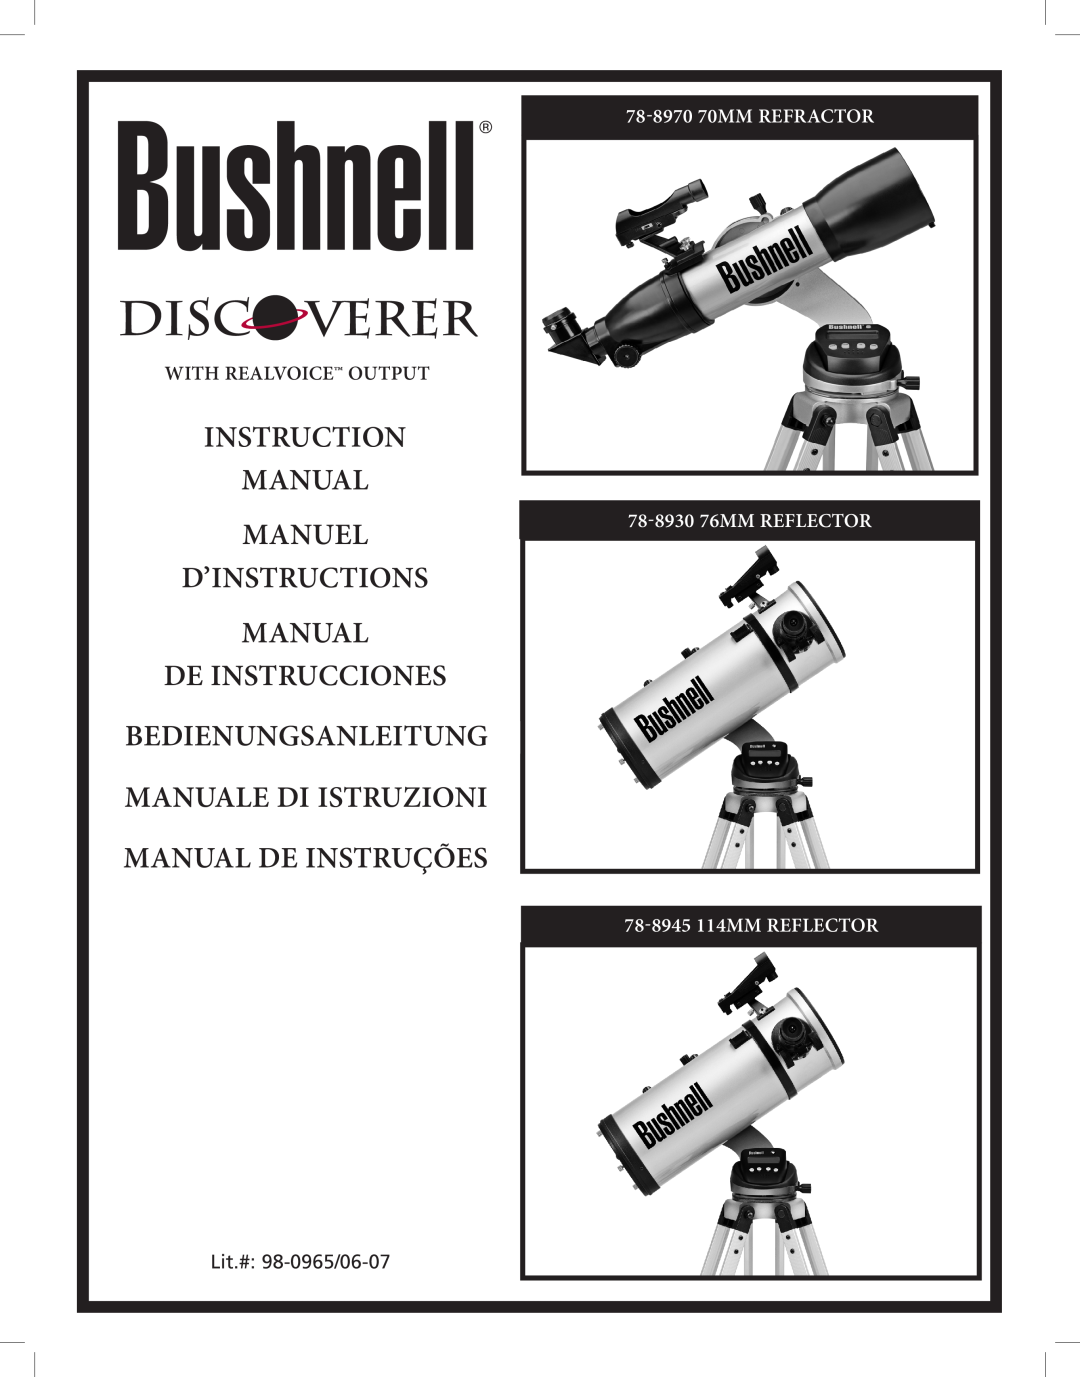 Bushnell Discoverer instruction manual Instruction Manual manuel d’instructions Manual, With RealVoice outpuT 